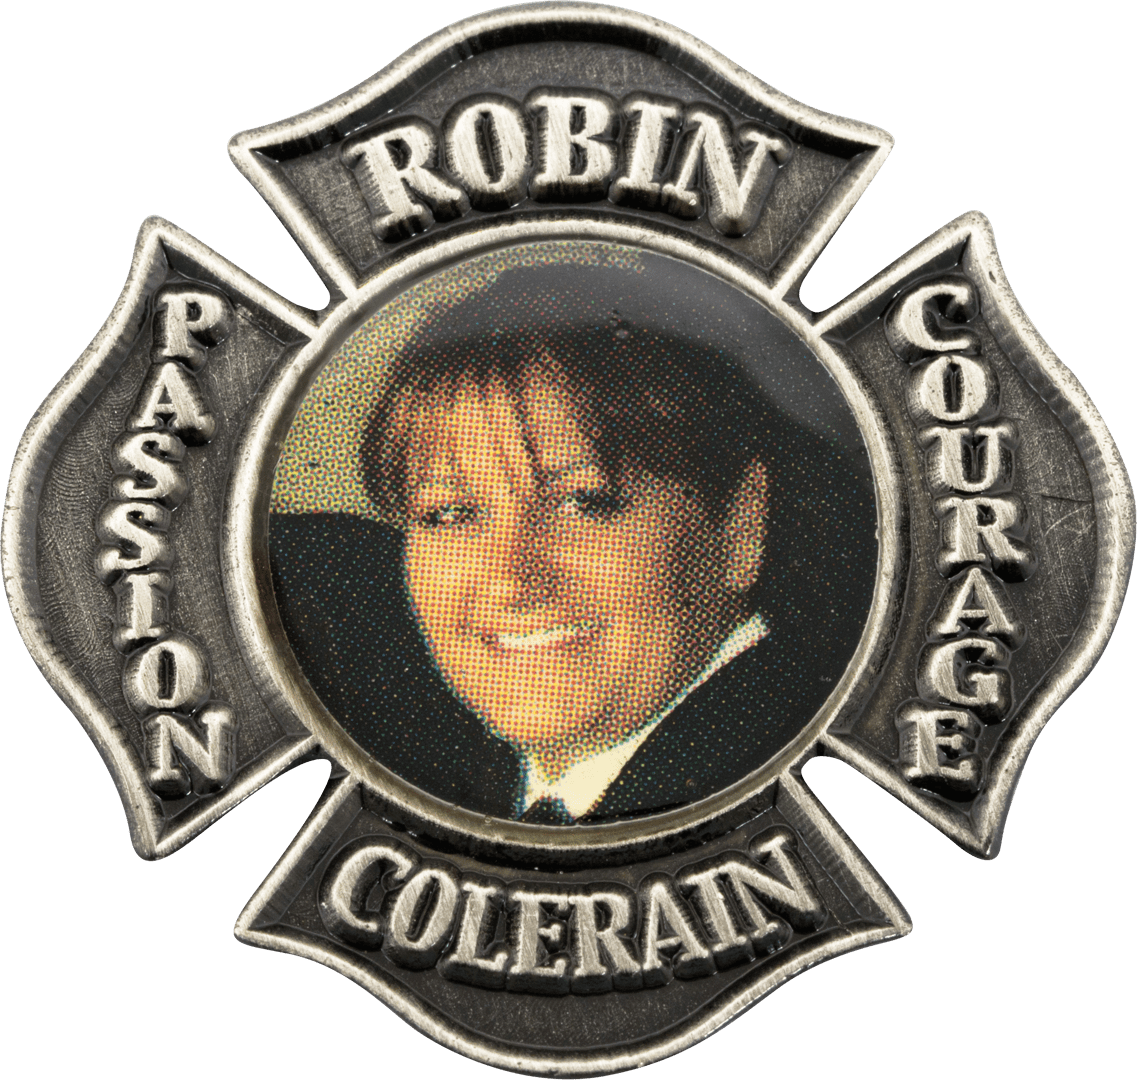 Robin Colerain